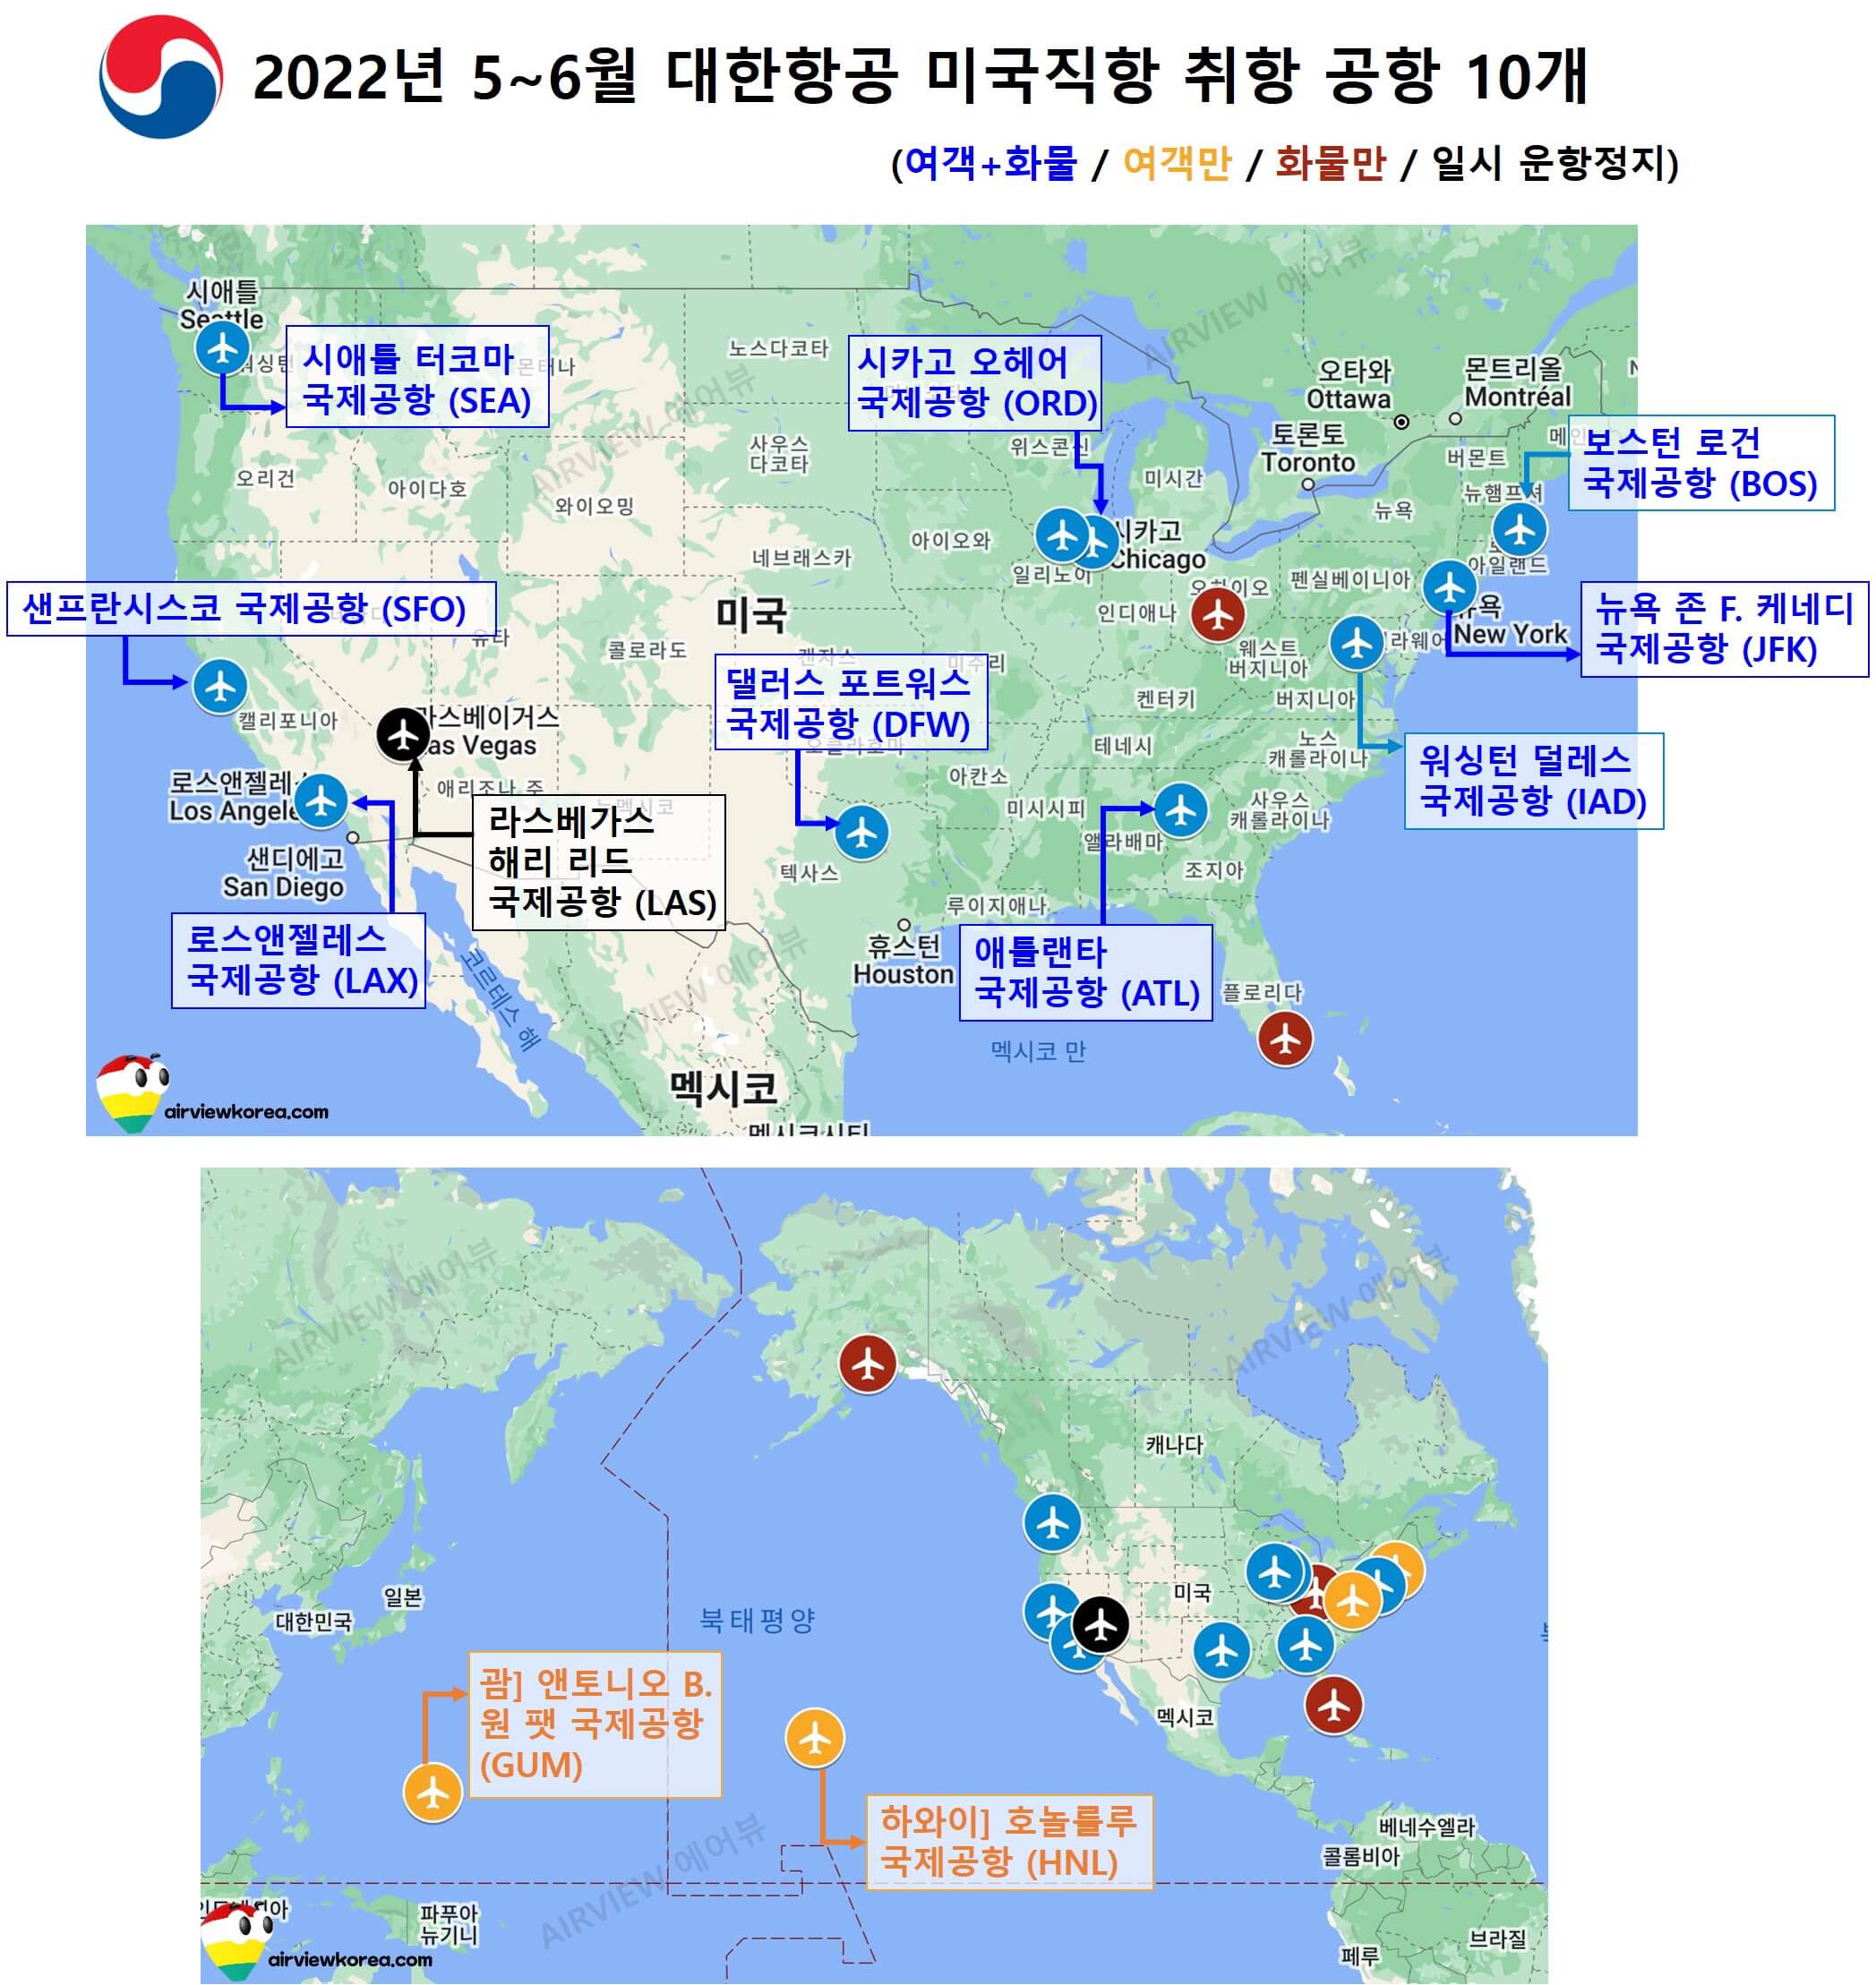 2022년 5~6월 간 대한항공을 타고 미국에 갈 수 있는 공항 공항 10개의 이름과 위치를 세계지도에 표시한 사진